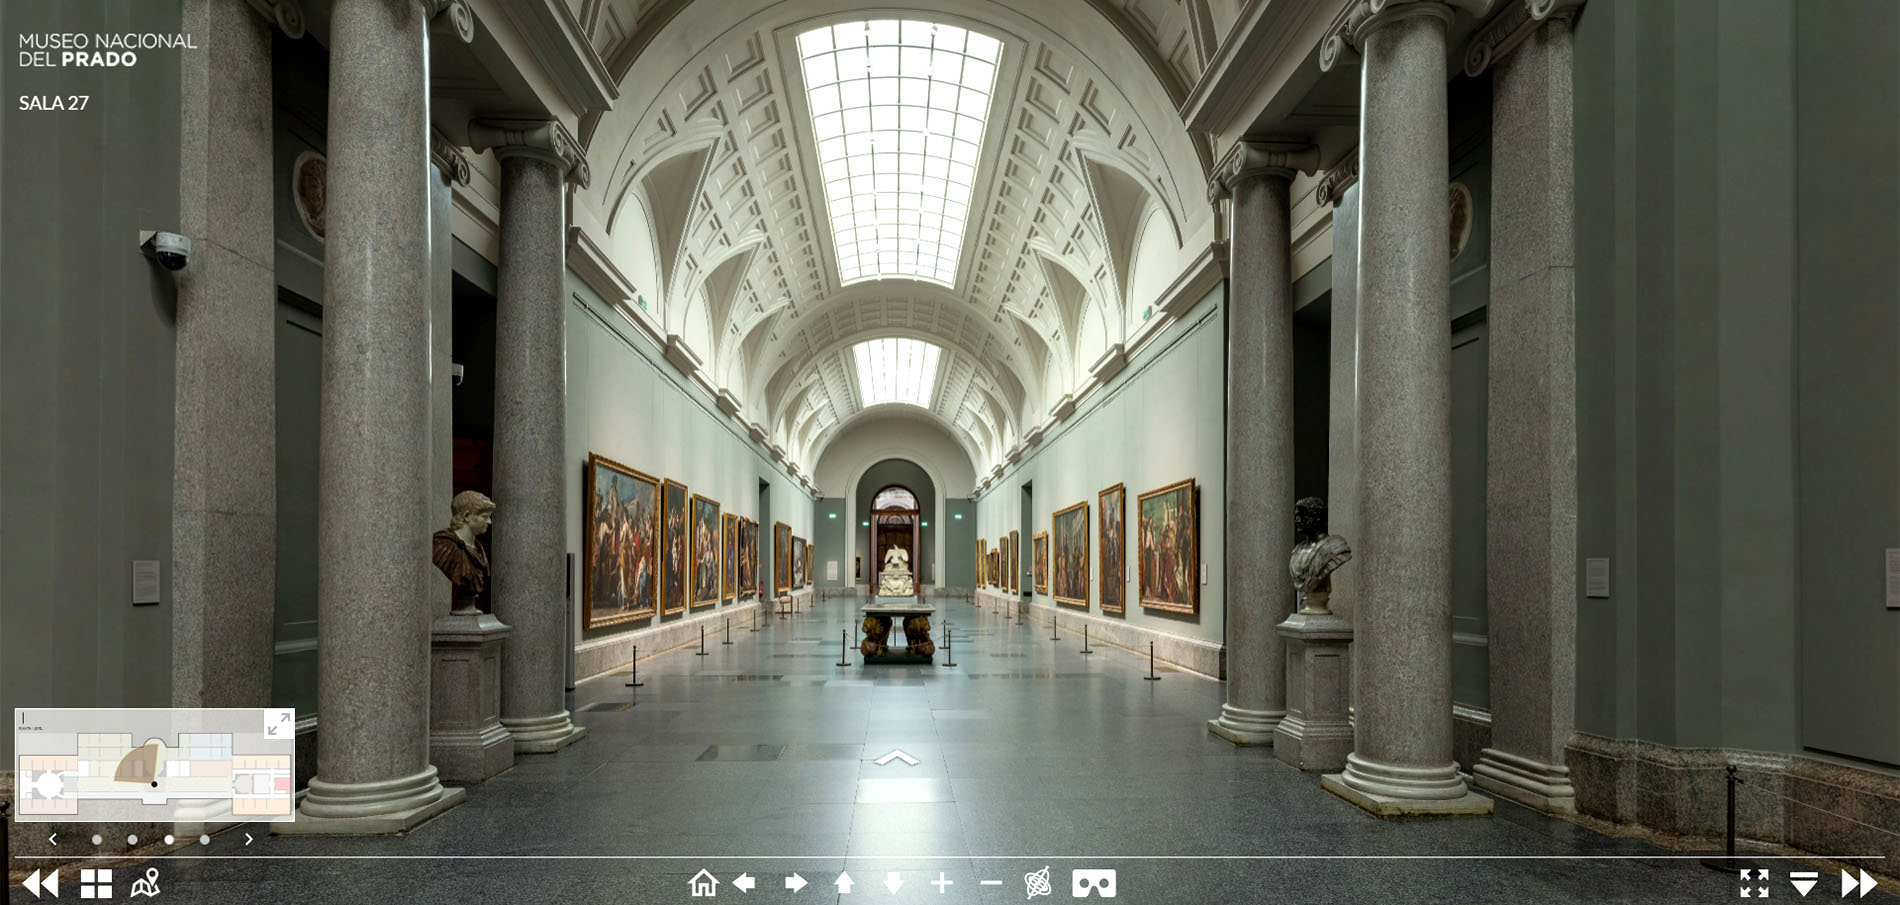 Виртуальная экскурсия по залам Museo Nacional Del Prado, скриншот с сайта музея